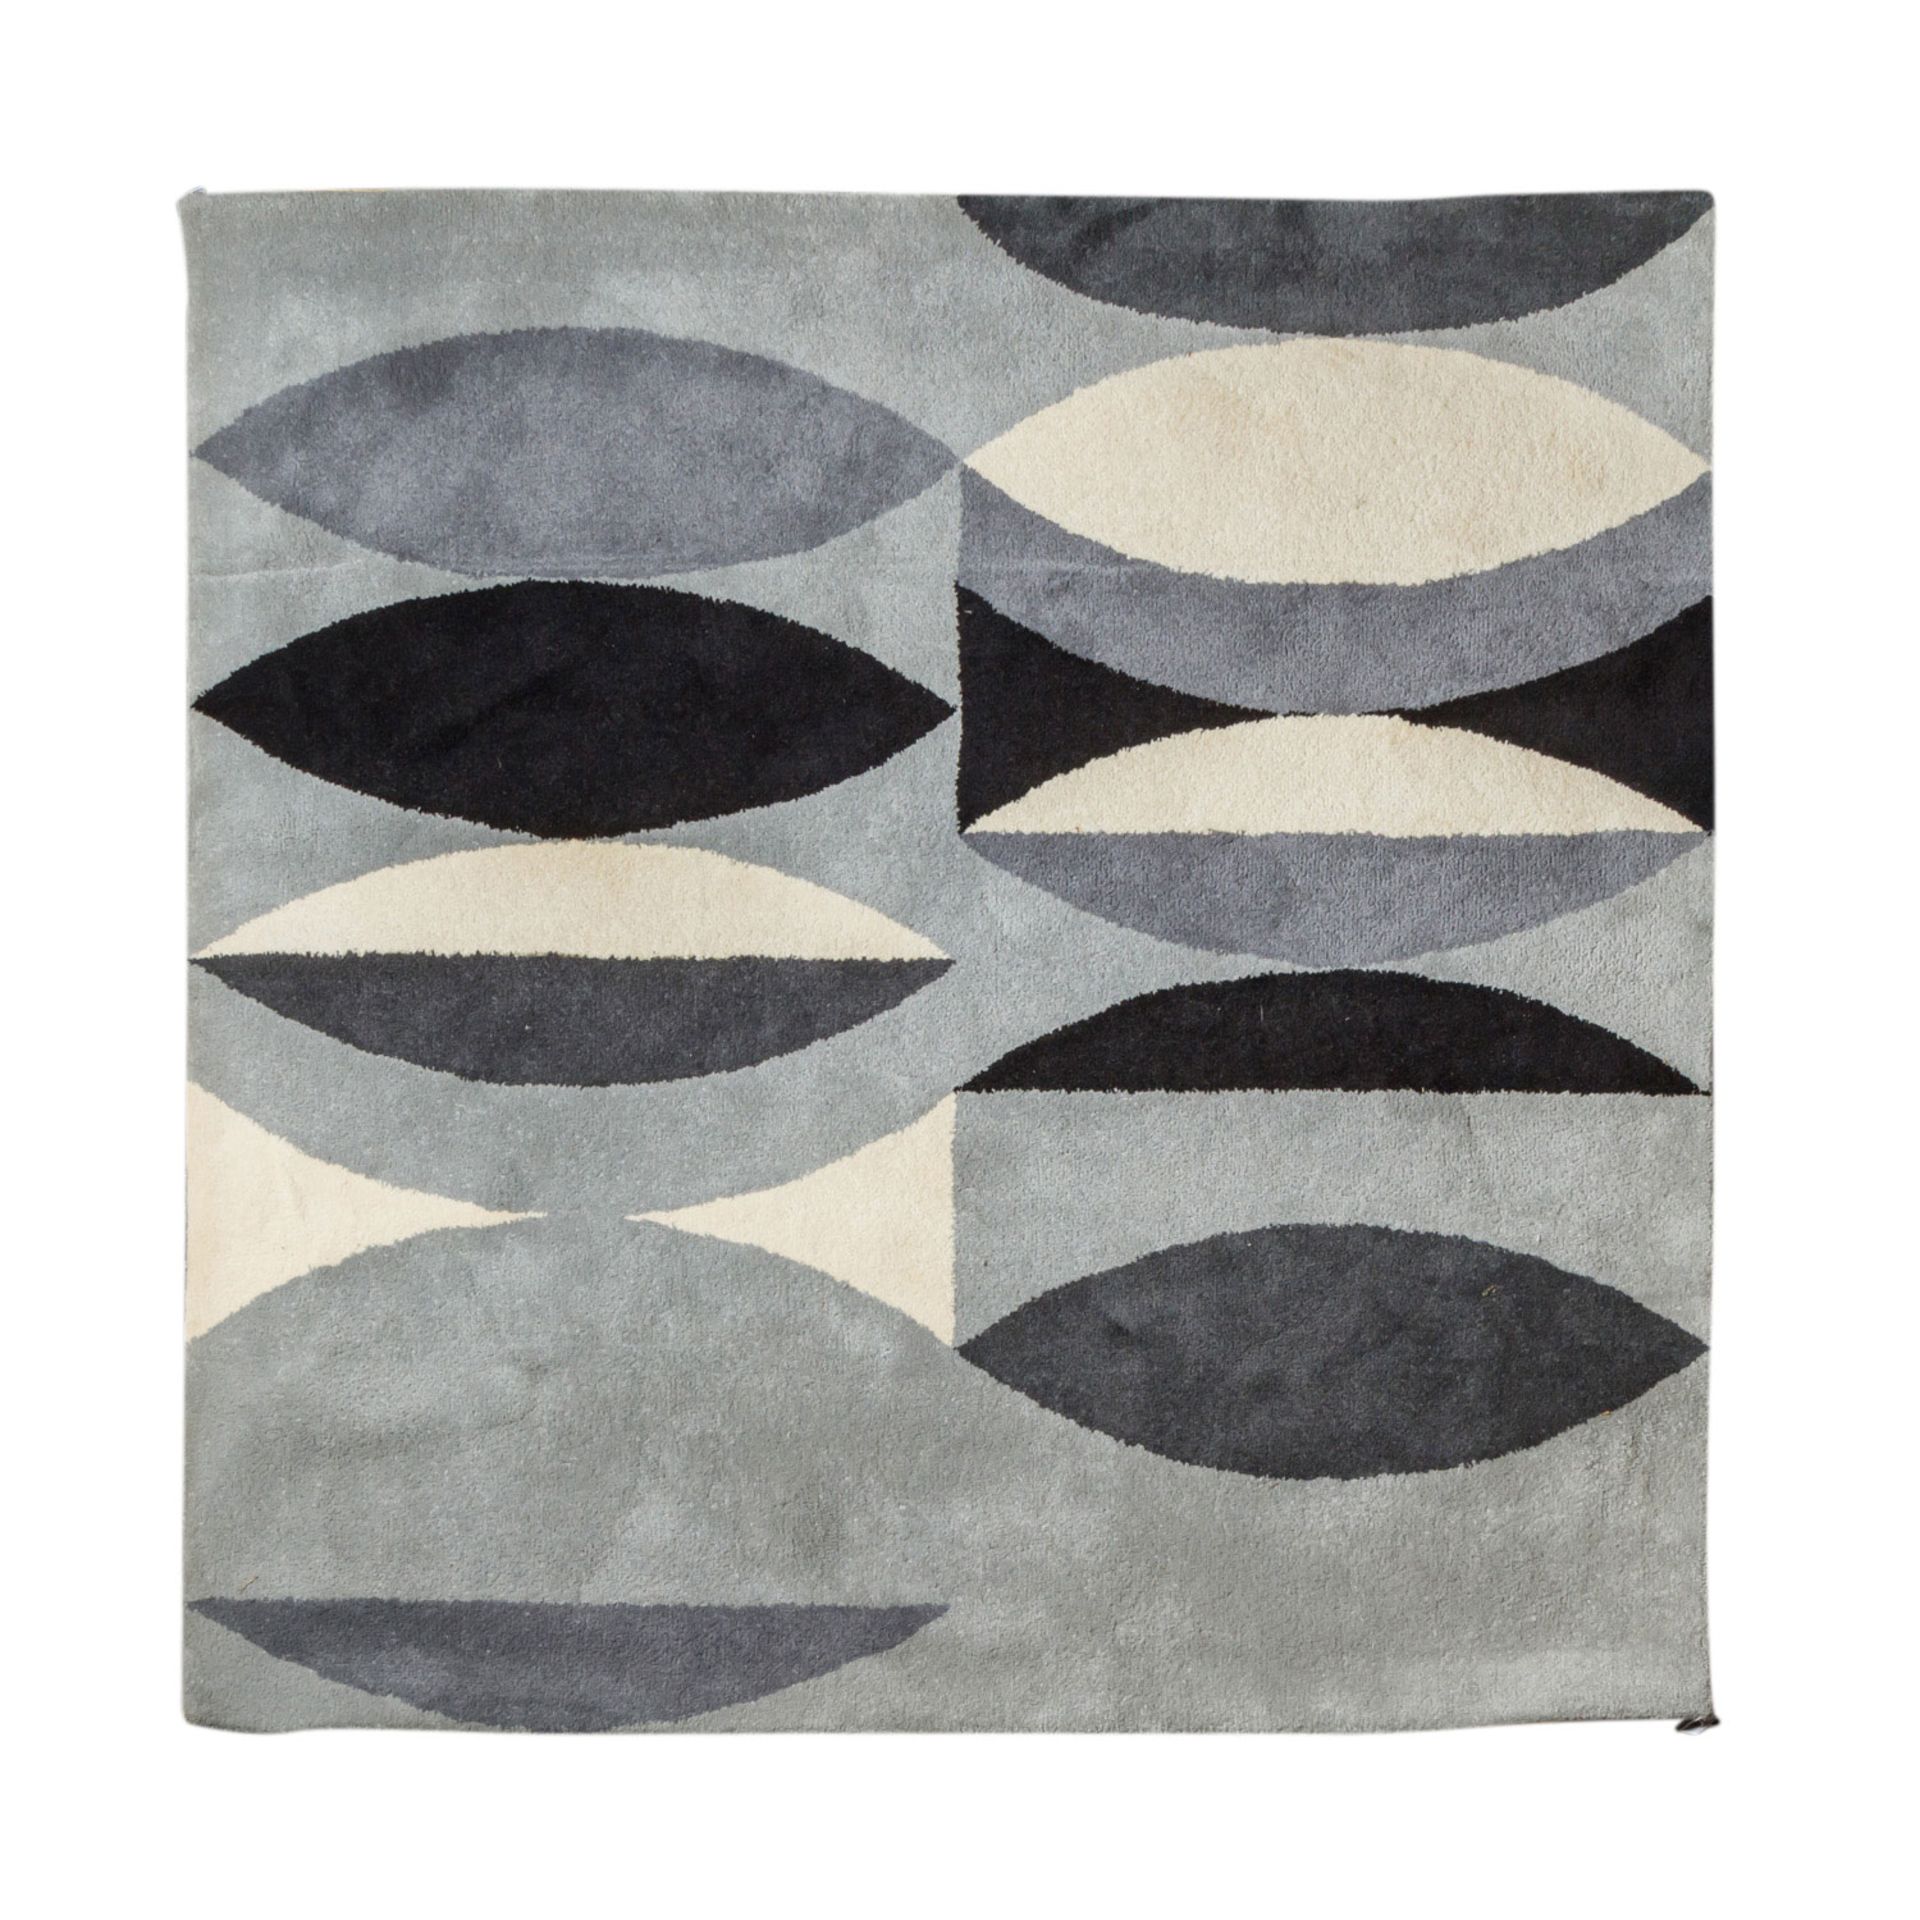 Design Teppich aus Wolle. 1970er Jahre, 200x196 cm.Großzügig, geometrisch gemustert mit großen